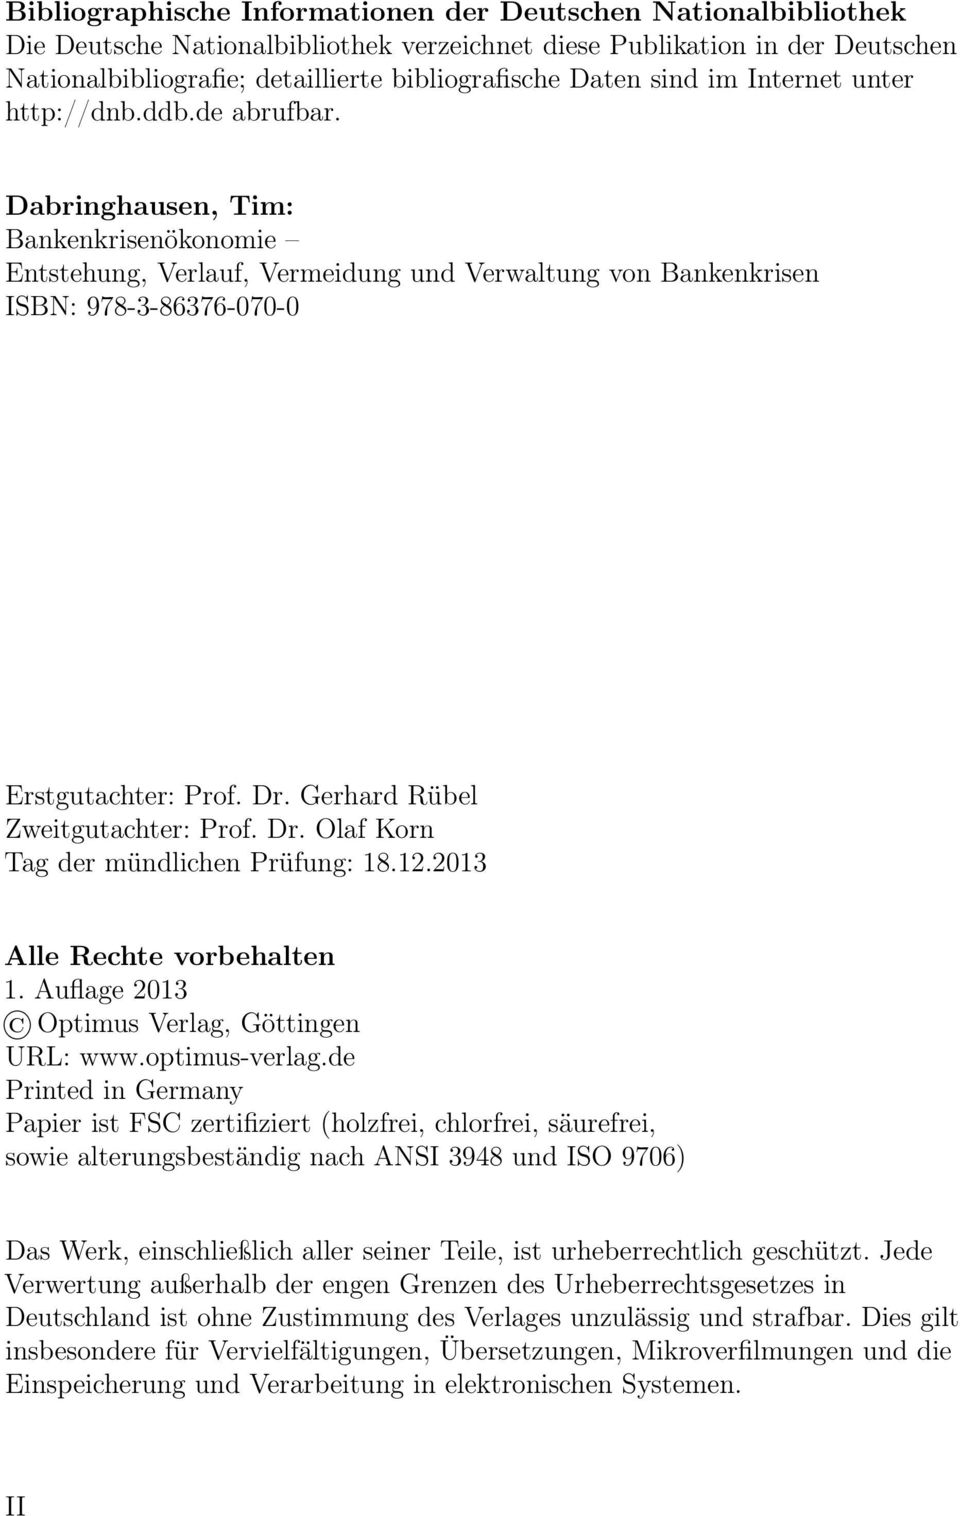 Dr. Gerhard Rübel Zweitgutachter: Prof. Dr. Olaf Korn Tag der mündlichen Prüfung: 18.12.2013 Alle Rechte vorbehalten 1. Auflage 2013 Optimus Verlag, Göttingen URL: www.optimus-verlag.